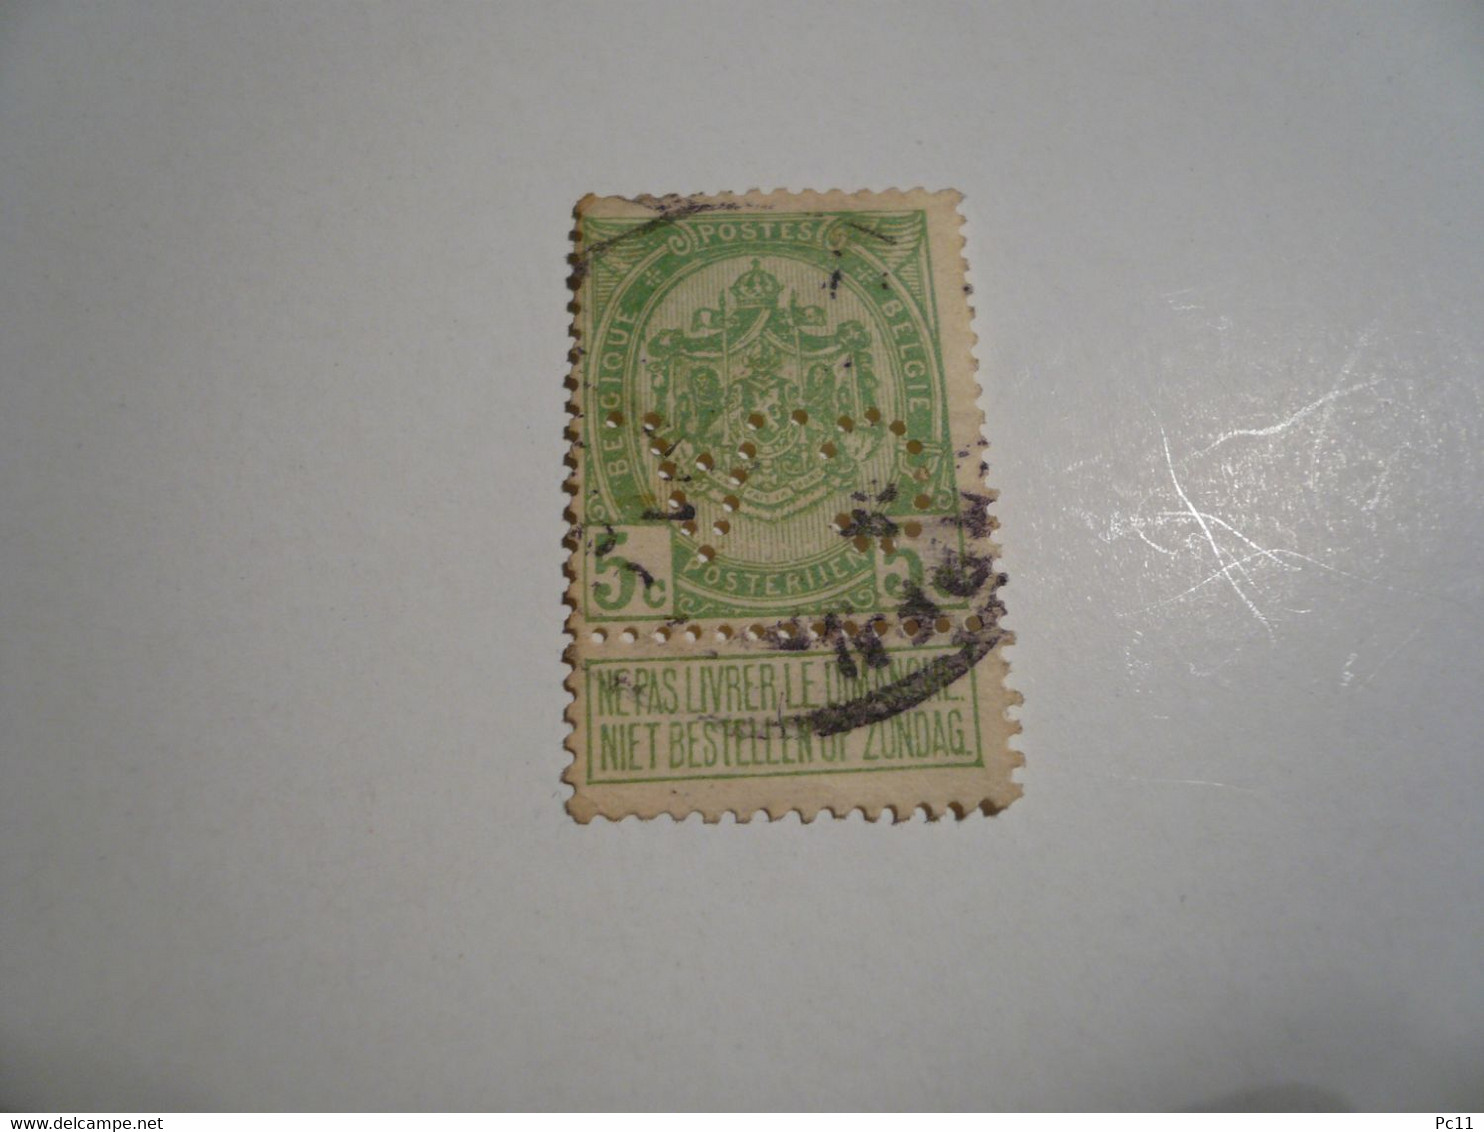 BELGIQUE-timbre Perforé 5C "armoirie" Avec Vignette " NE PAS LIVRER LE DIMANCHE"  Avec Charnière - Bon état - - Non Classés